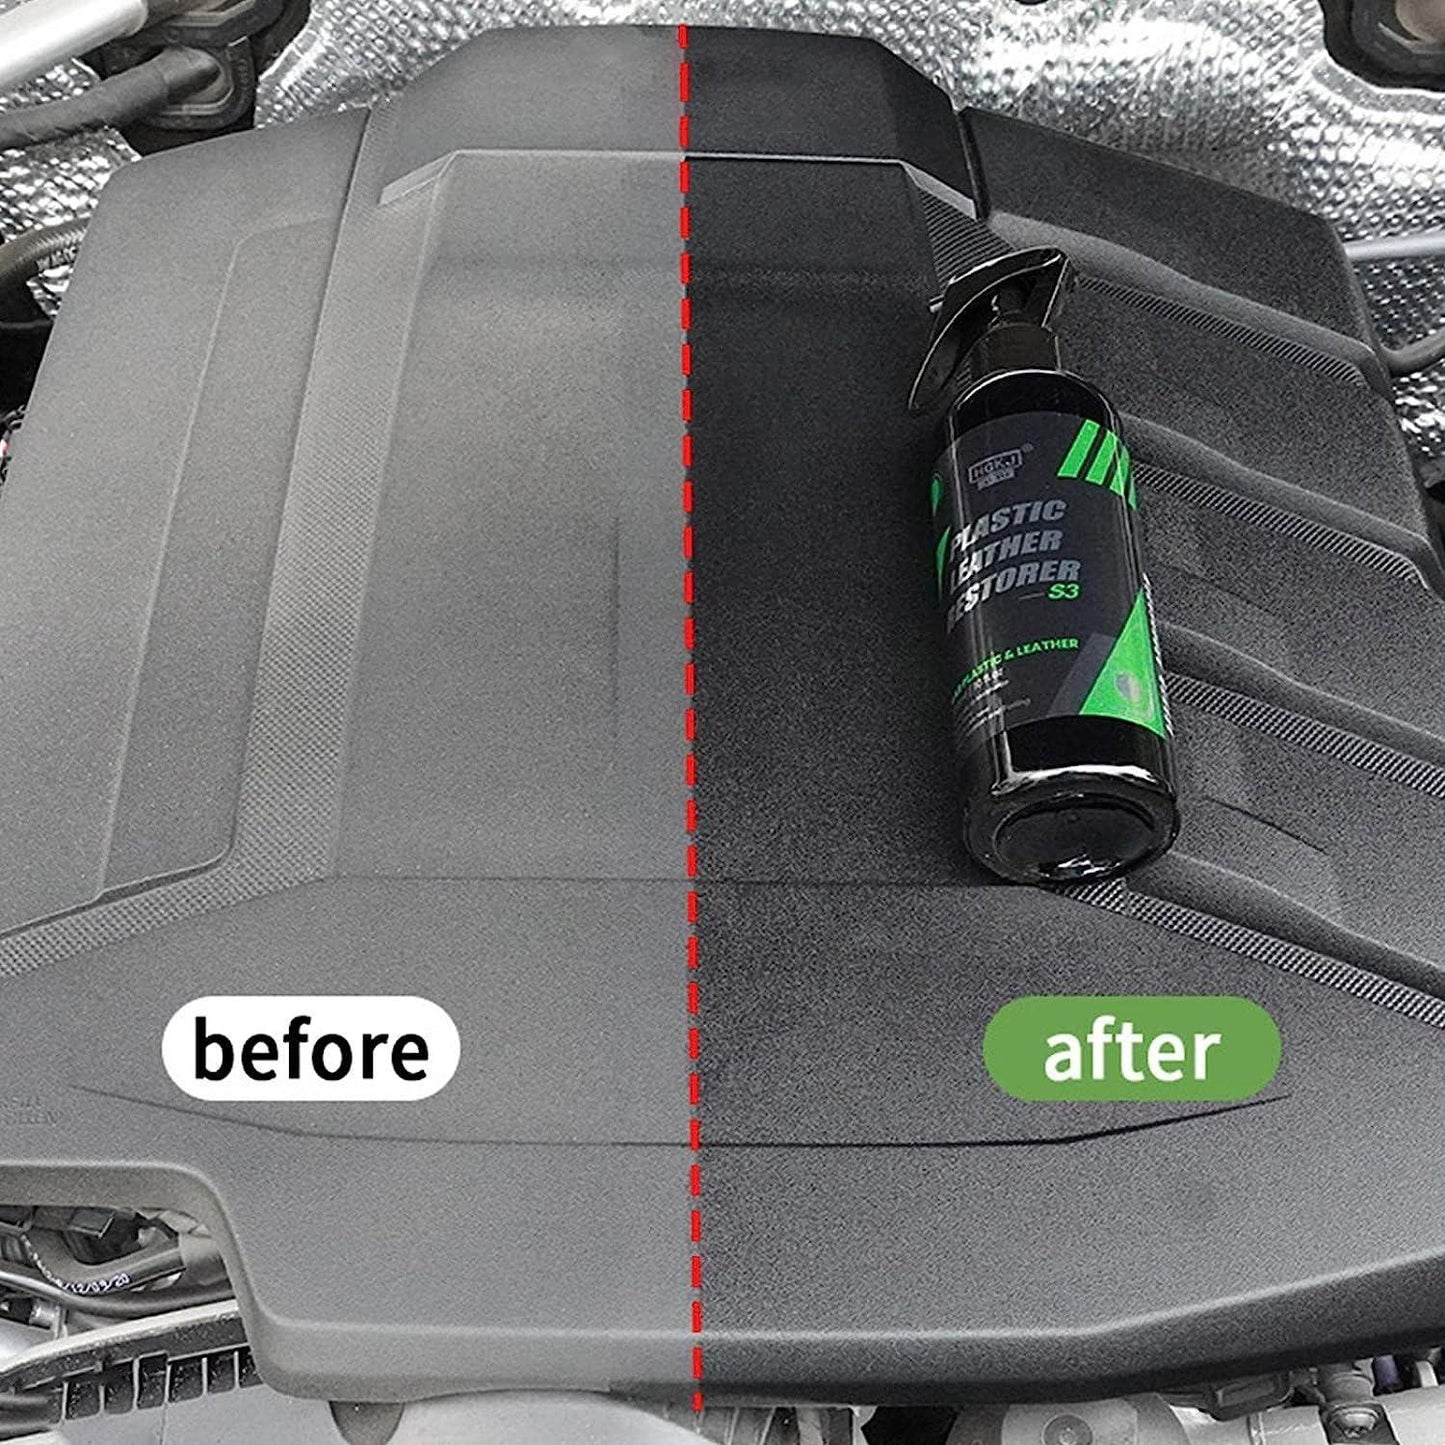 Car Leather PCV Renovator Spray Premium Formula Liquid (Pack of 1)